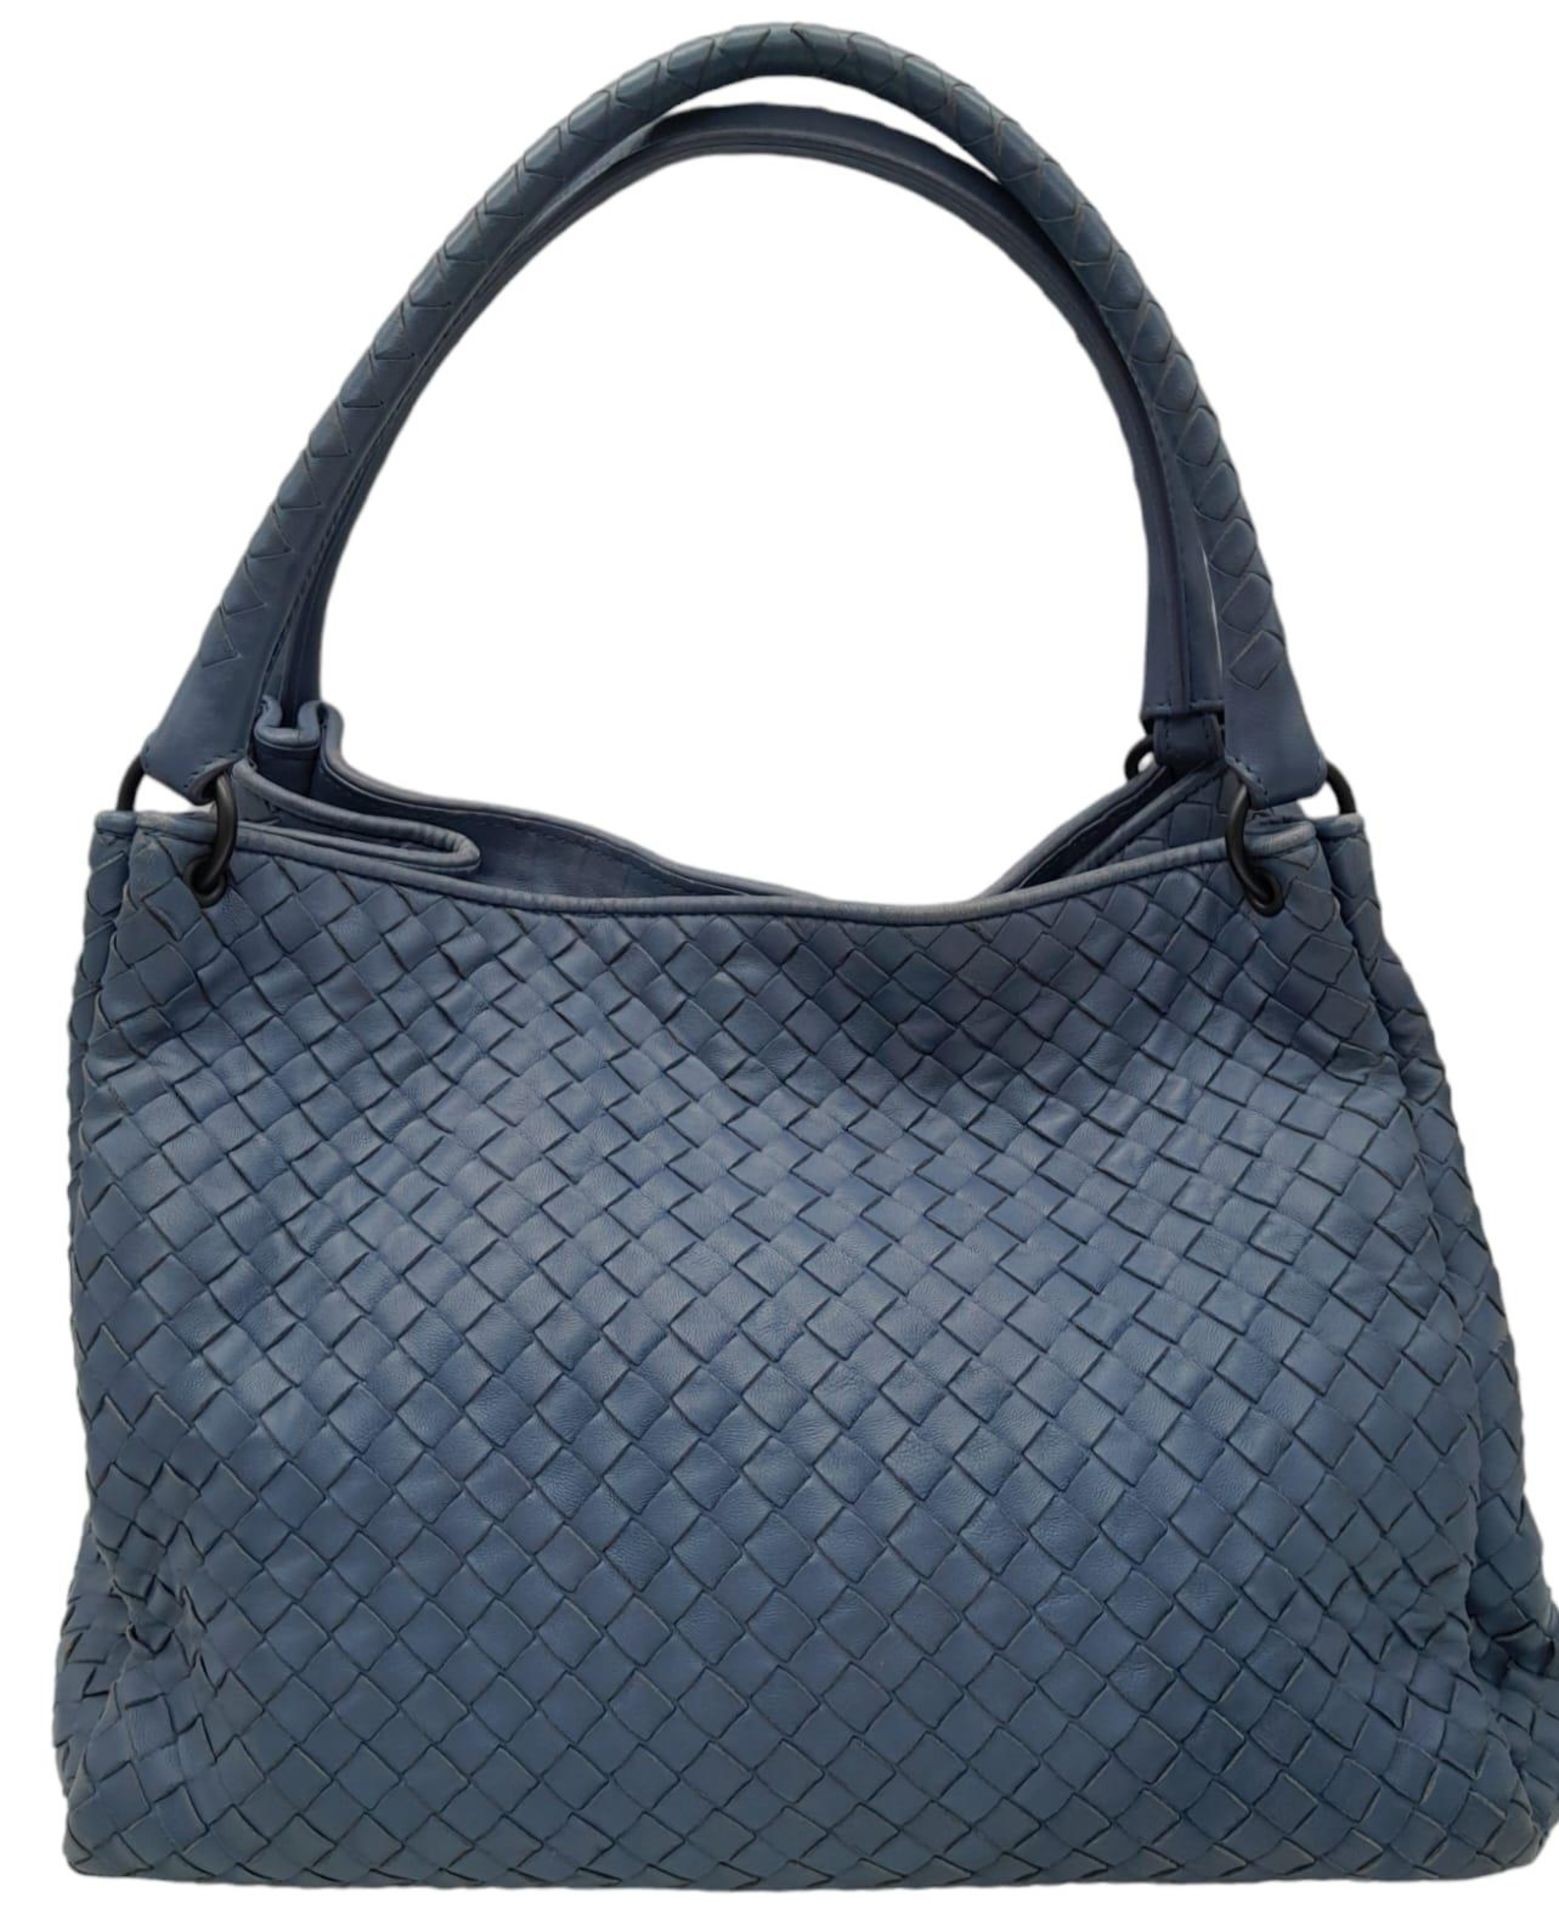 A Bottega Veneta Blue Intrecciato Parachute Tote Bag. Hand Woven Calfskin Leather Exterior, Double